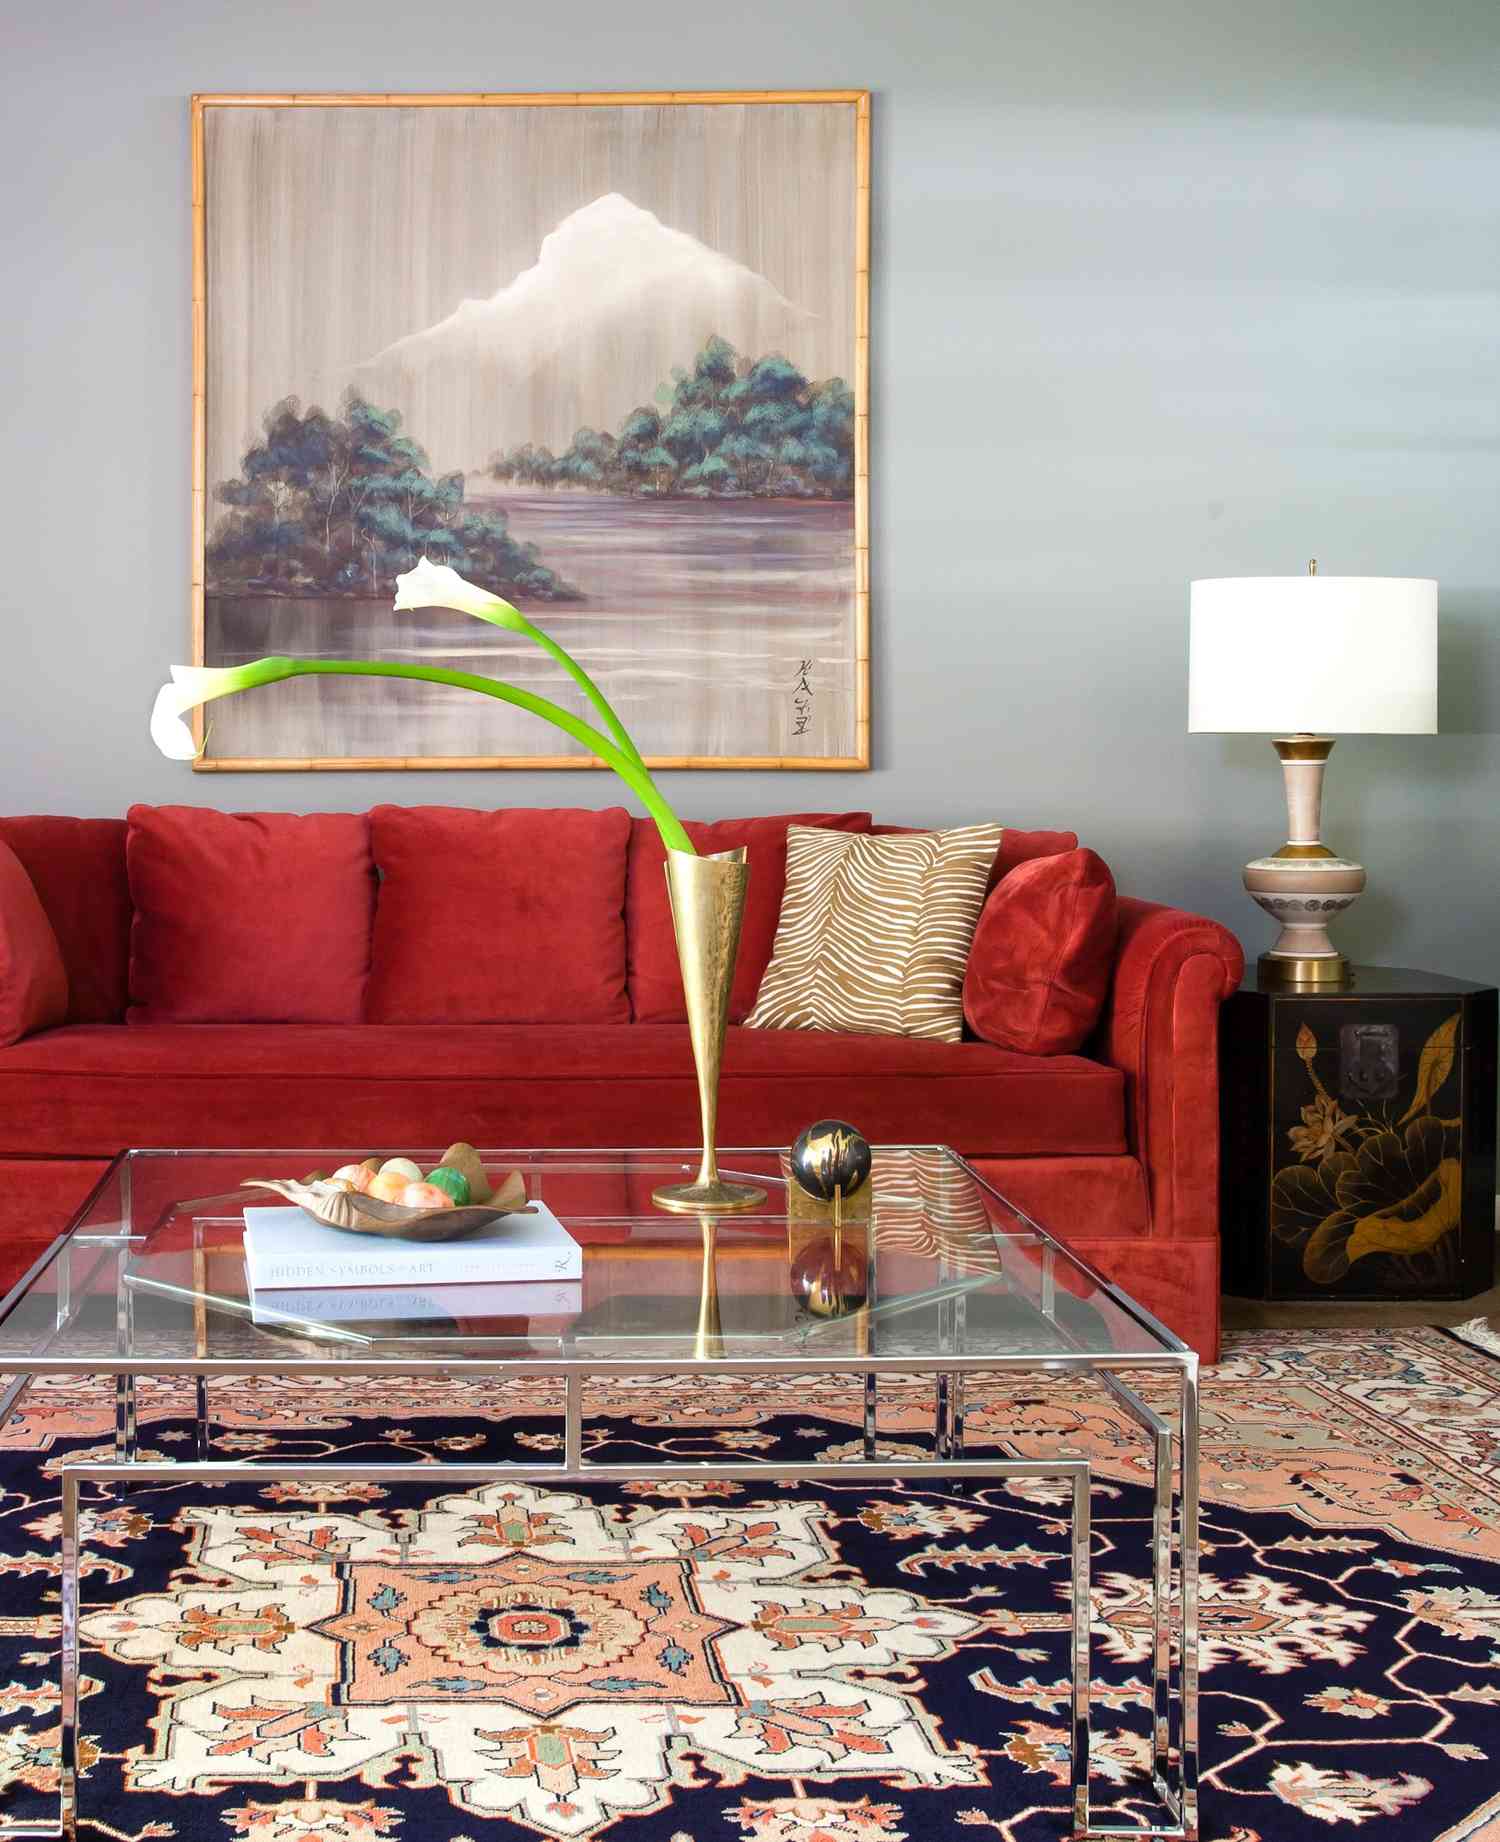 Graublaue Wände mit burgunderrotem Sofa